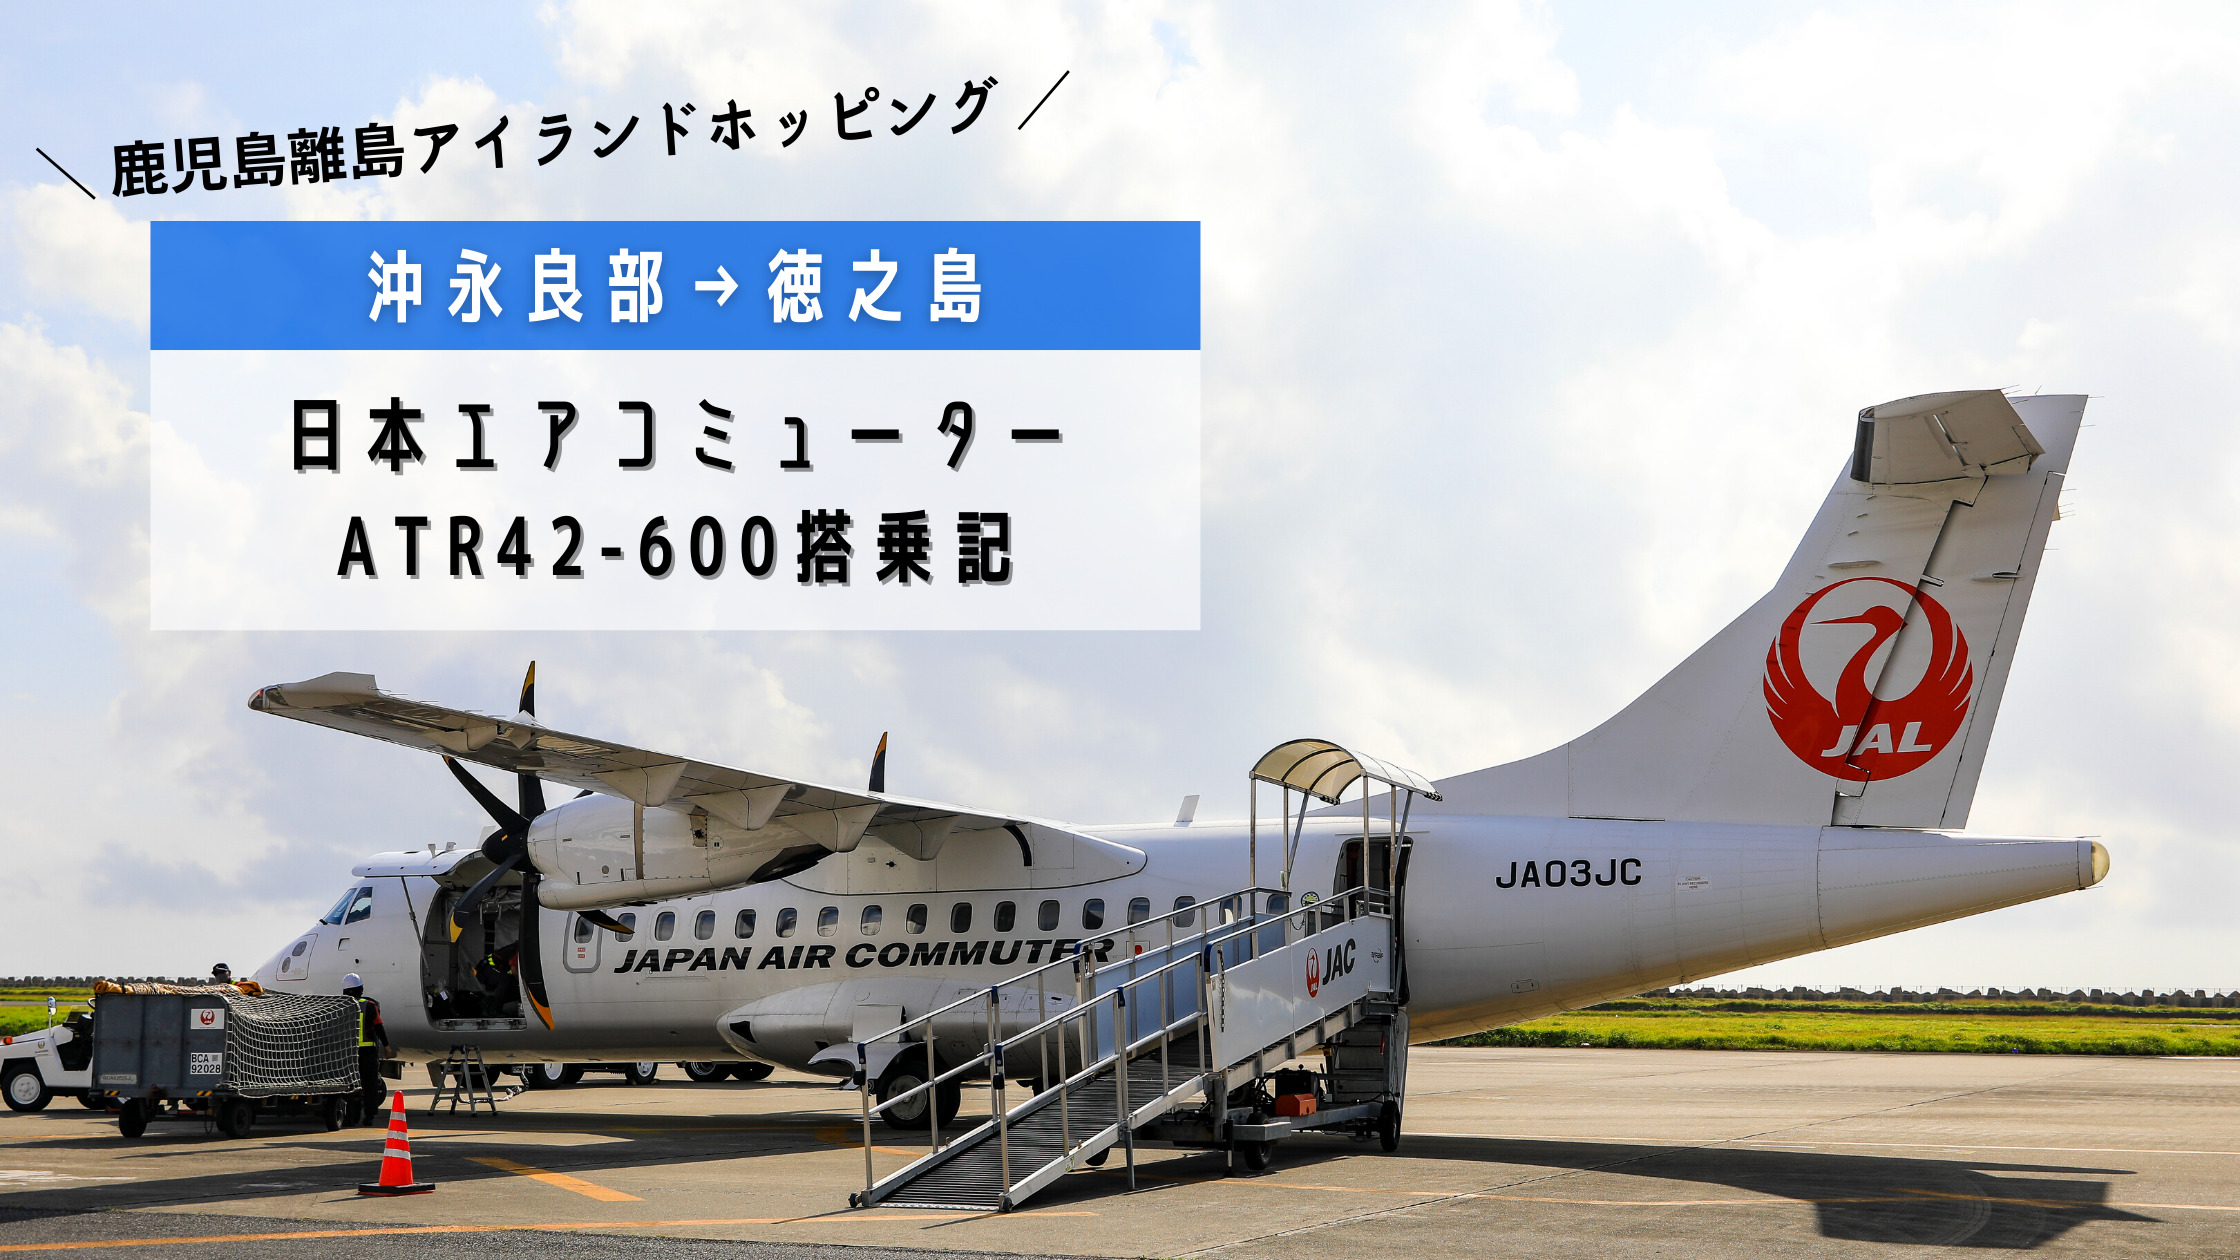 沖永良部→徳之島】鹿児島の離島を結ぶアイランドホッピング！日本エアコミューター(JAC)ATR42-600搭乗記 | シテイリョウコウ